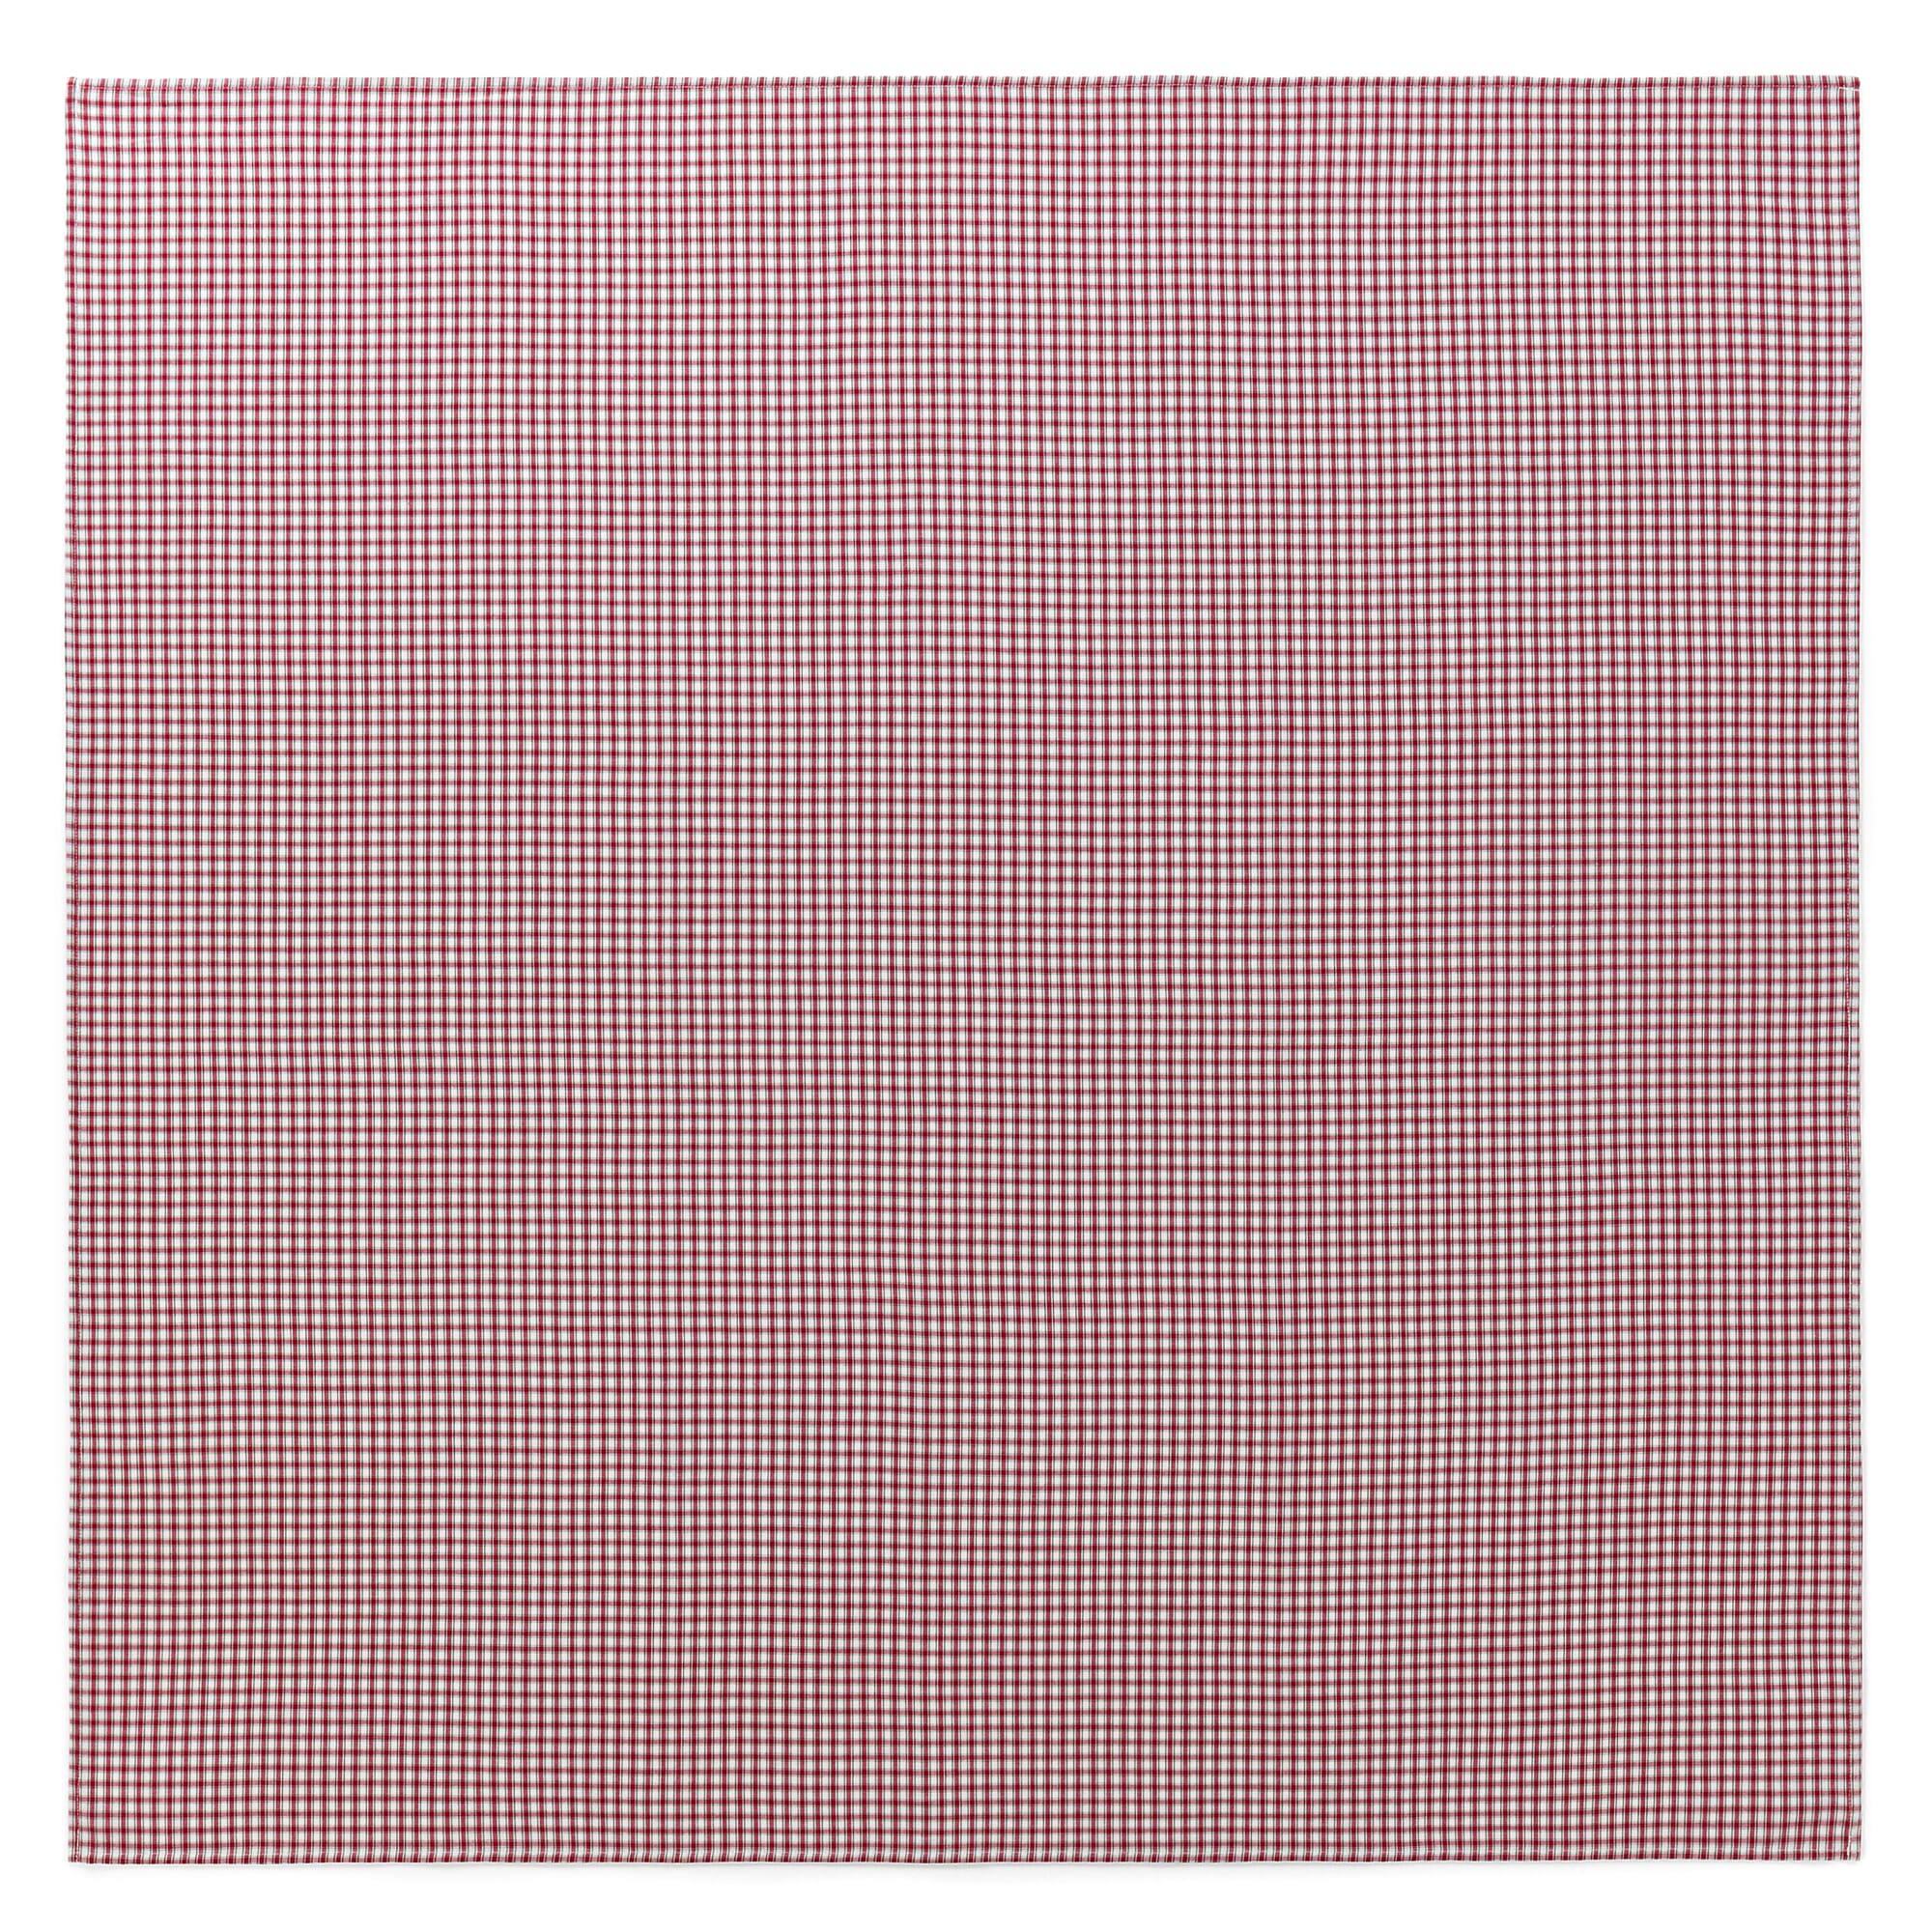 Tischdecke rot-weiß kariert, | 135 Manufactum 135 cm ×